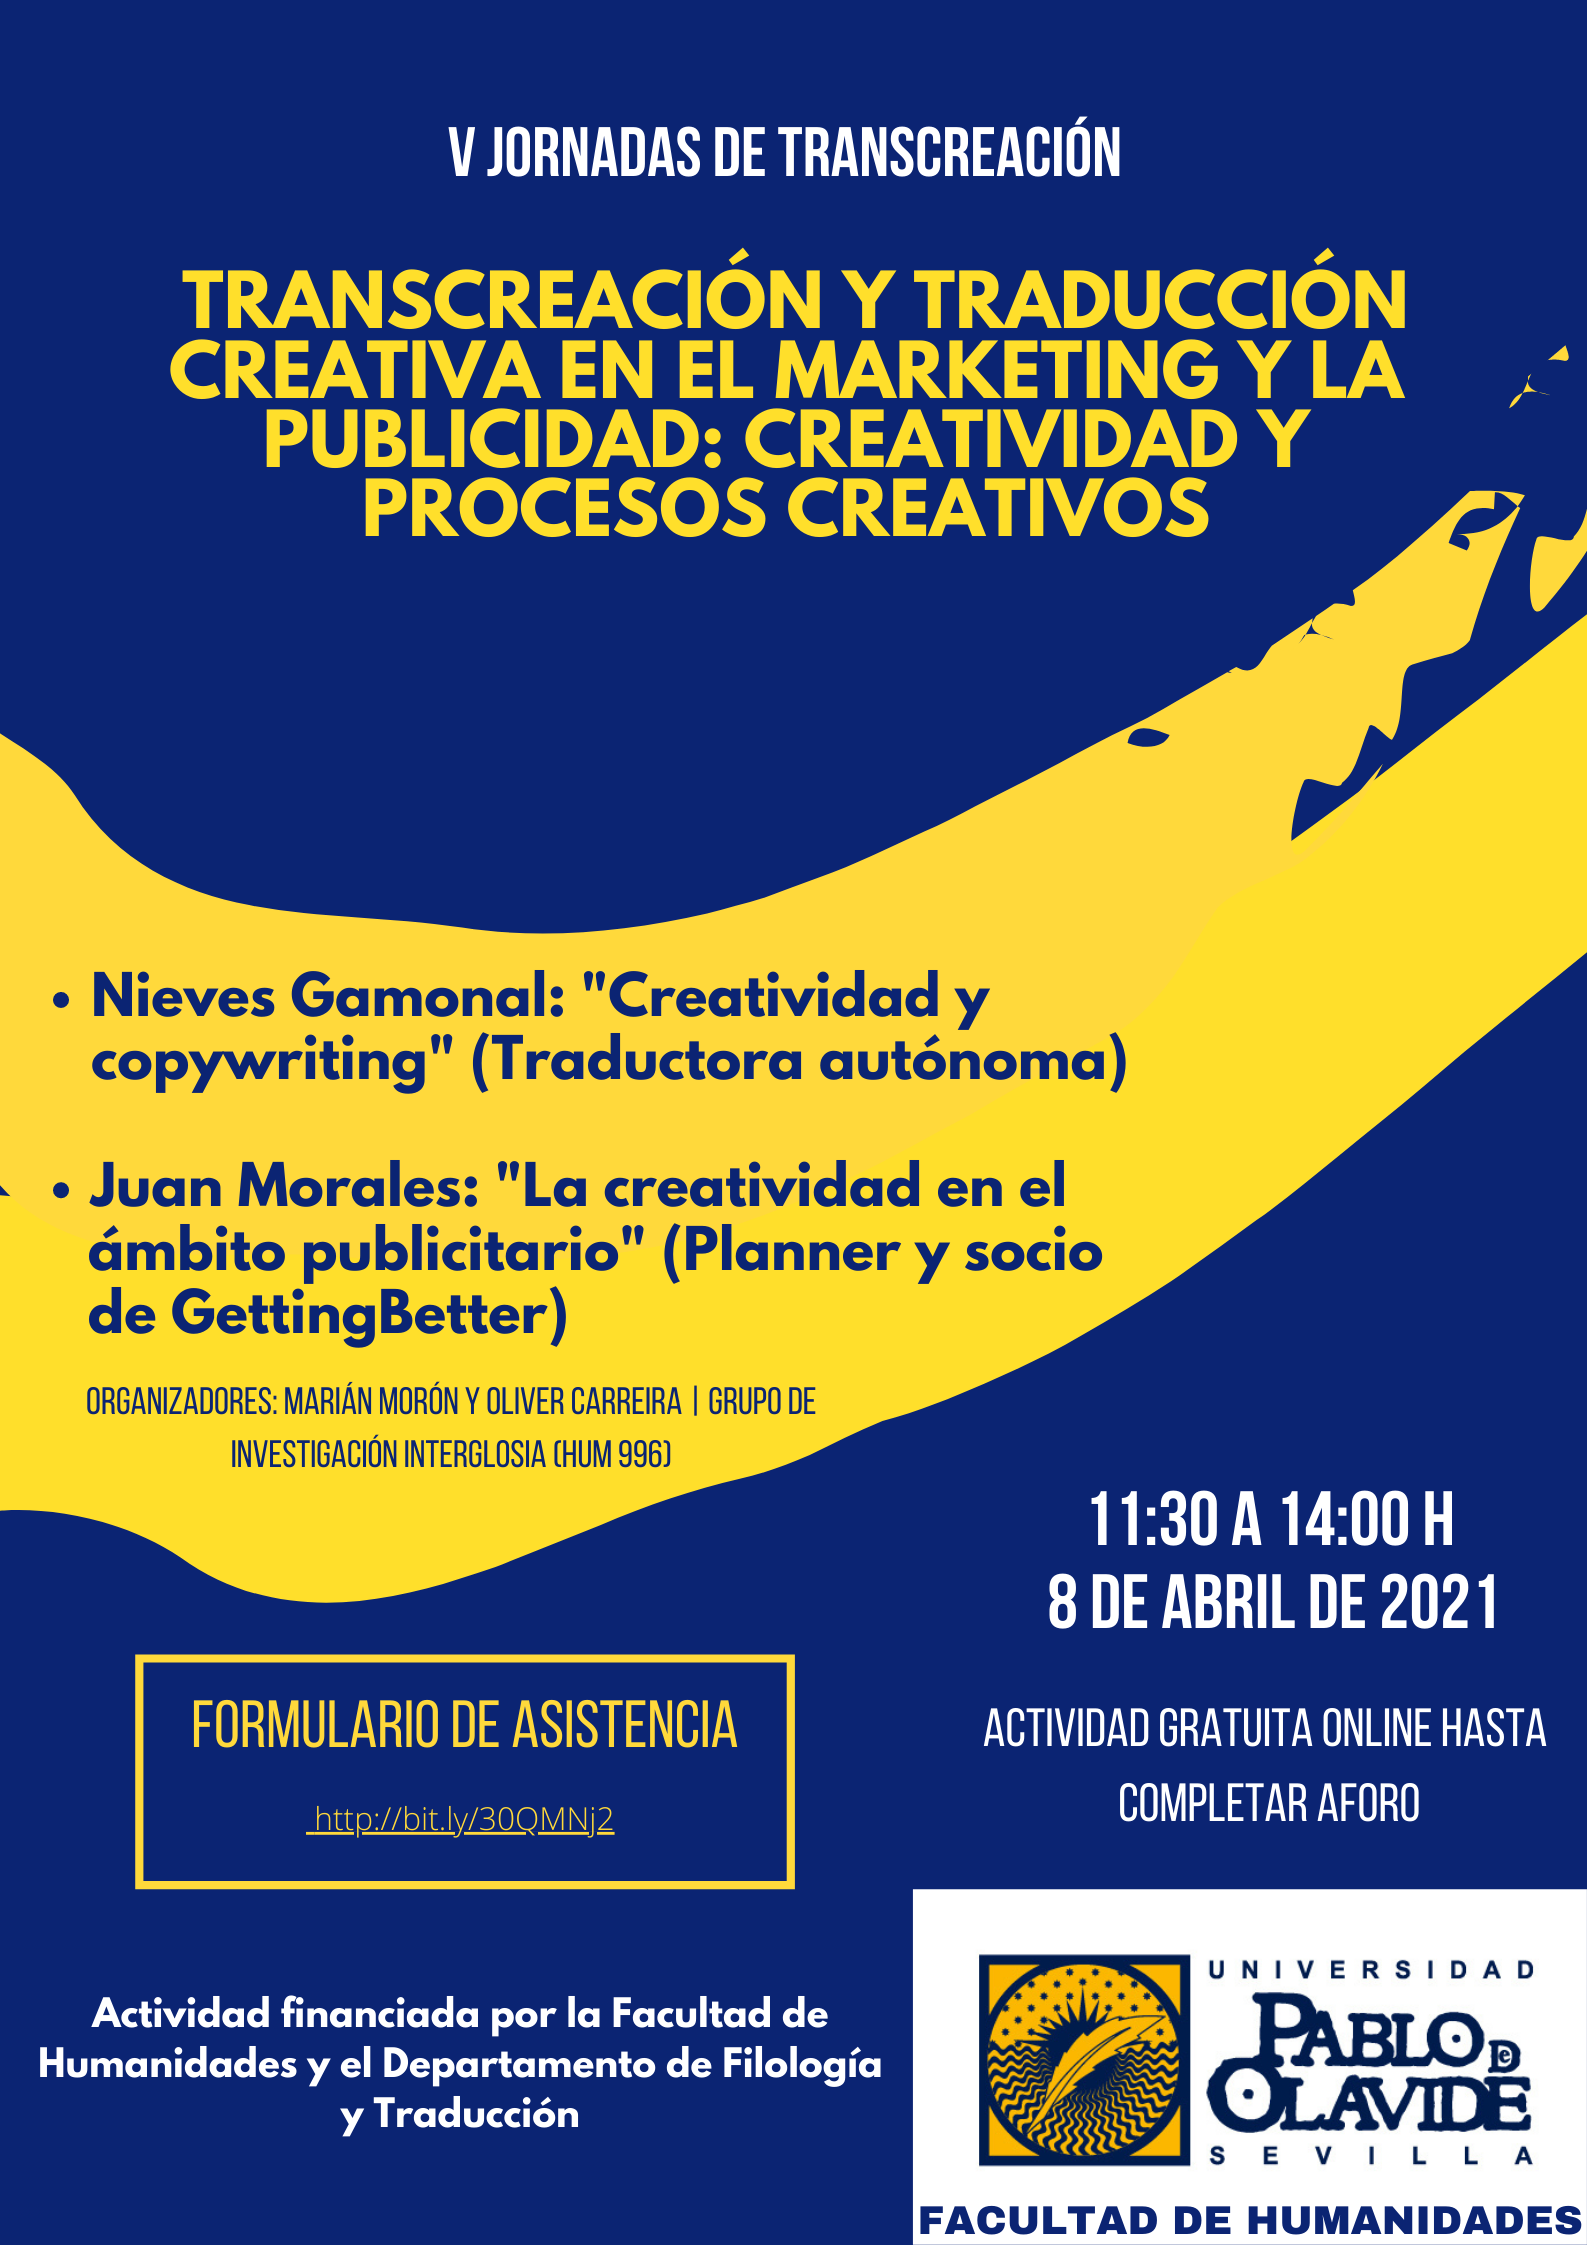 V Jornadas sobre Transcreación y Traducción Creativa en el Marketing y la Publicidad_ Creatividad y Procesos Creativos (4)